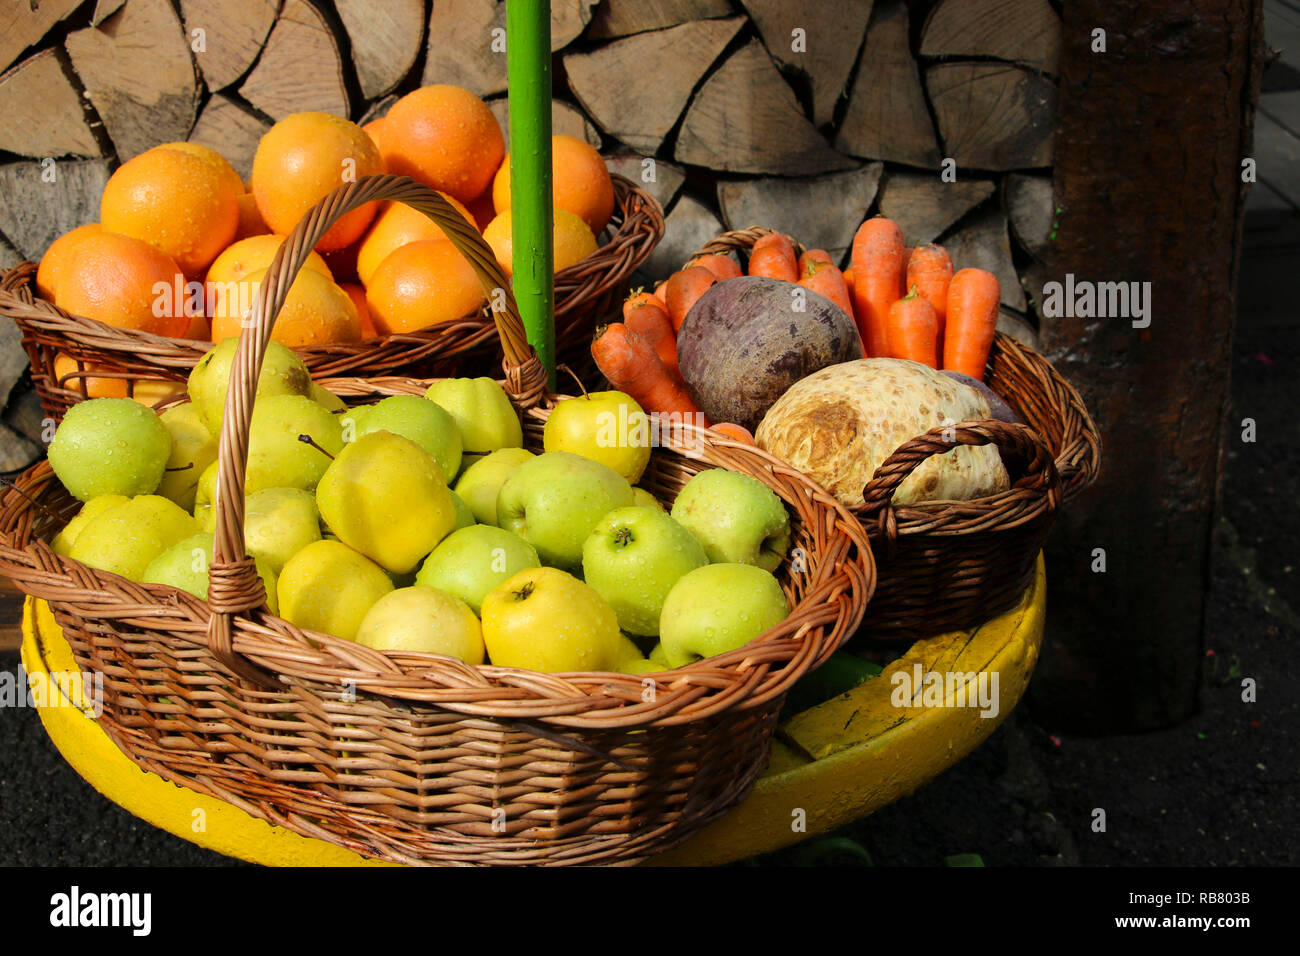 Frische Äpfel, Orangen, Karotten und Rüben in Weidenkörbe in der Nähe der Wand von Rundholz. Gesunde Ernährung und Diät Konzept. Stockfoto